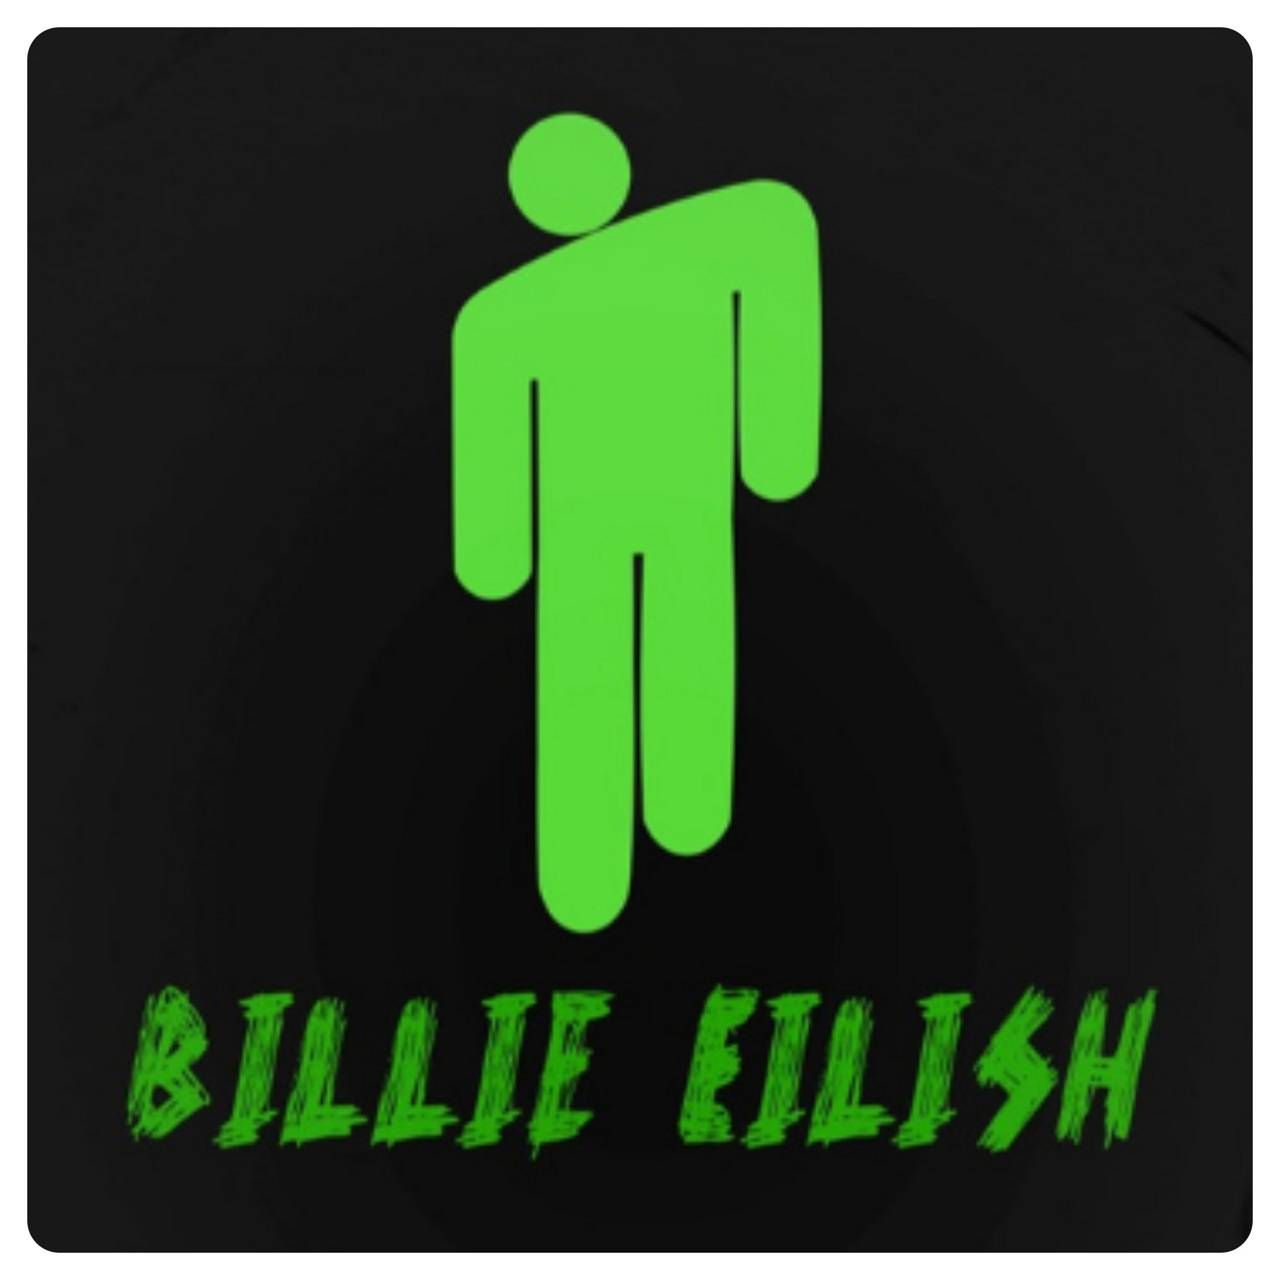 Share more than 141 billie eilish logo - camera.edu.vn